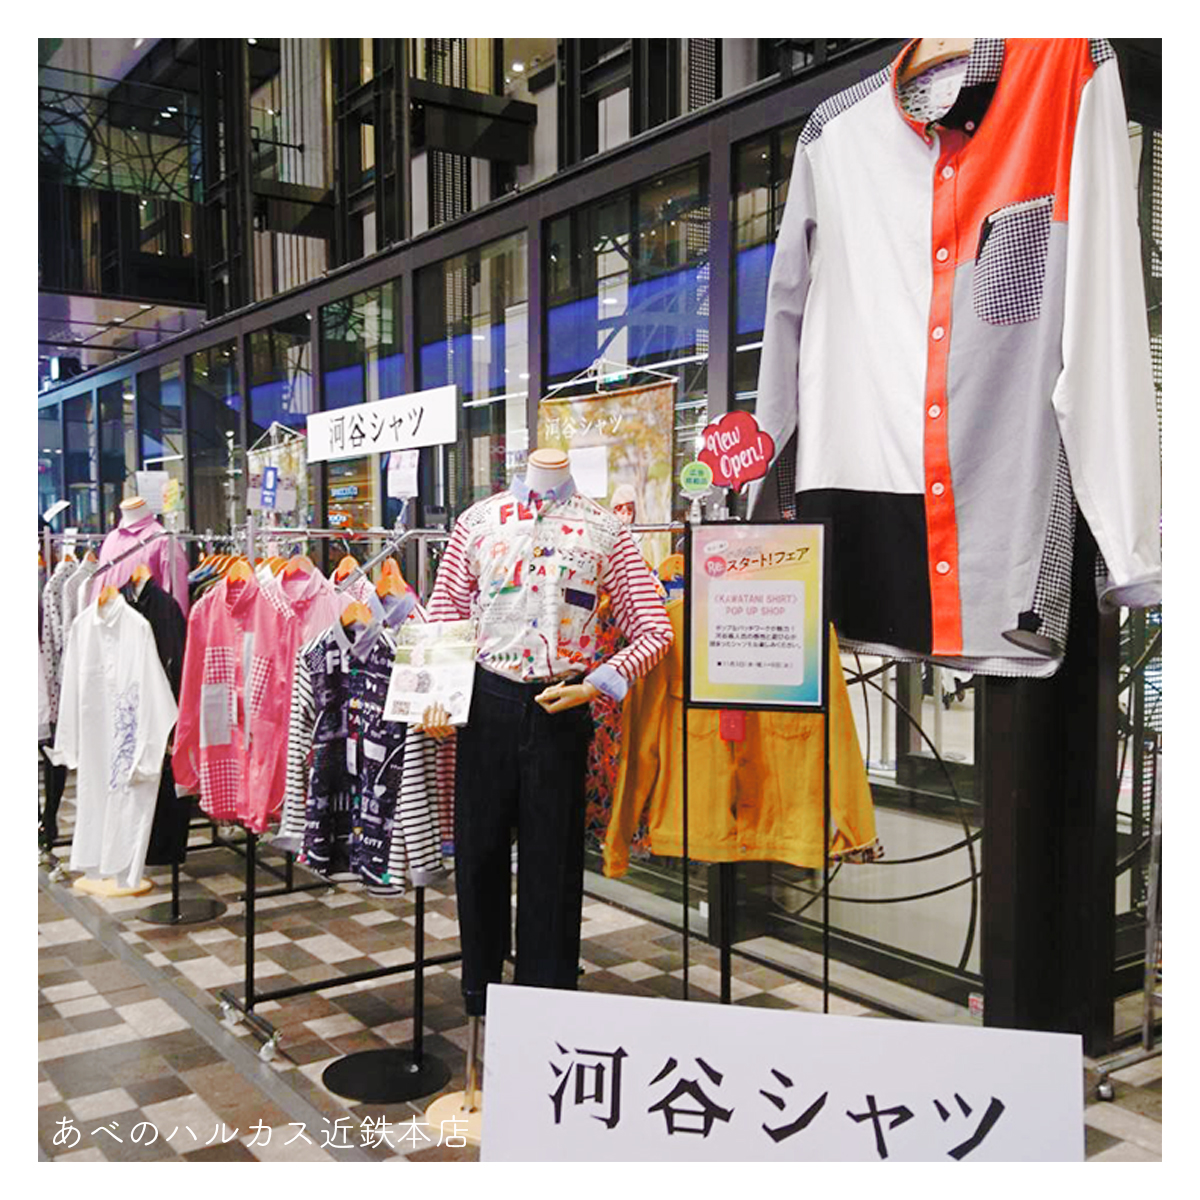 【New】あべのハルカス近鉄本店(大阪)にPOPUPSHOPがオープンしました♪